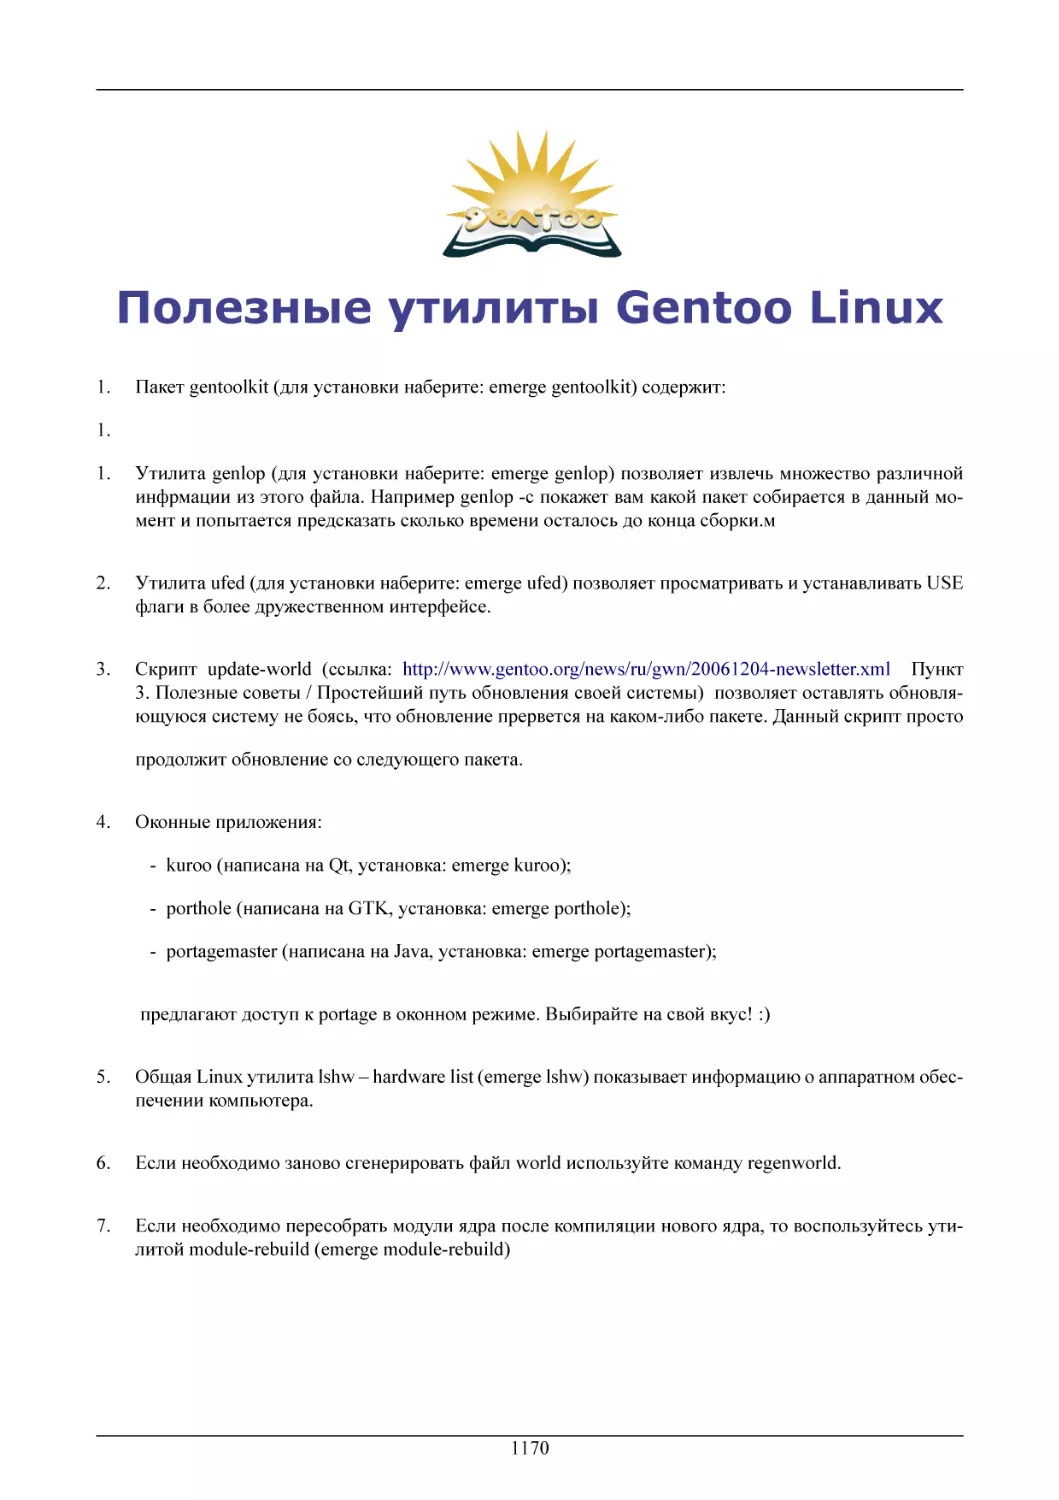 Полезные утилиты Gentoo Linux